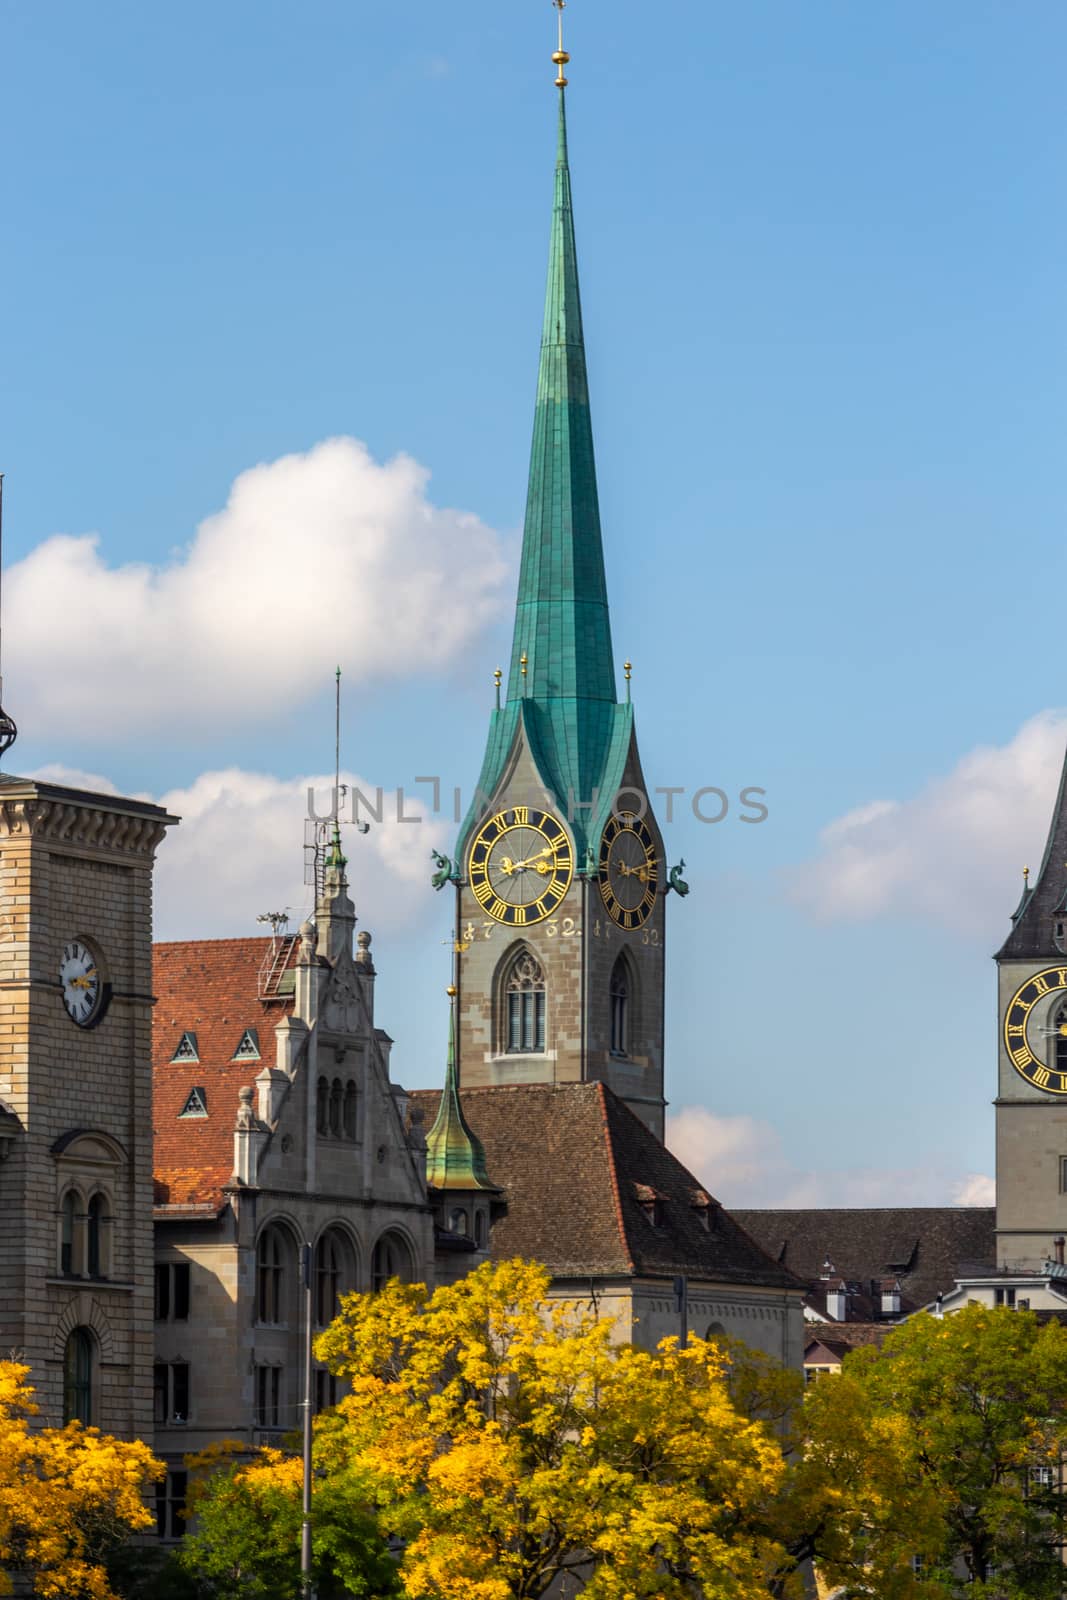 The tower of Fraumuenster church in Zurich, Switzerland by reinerc